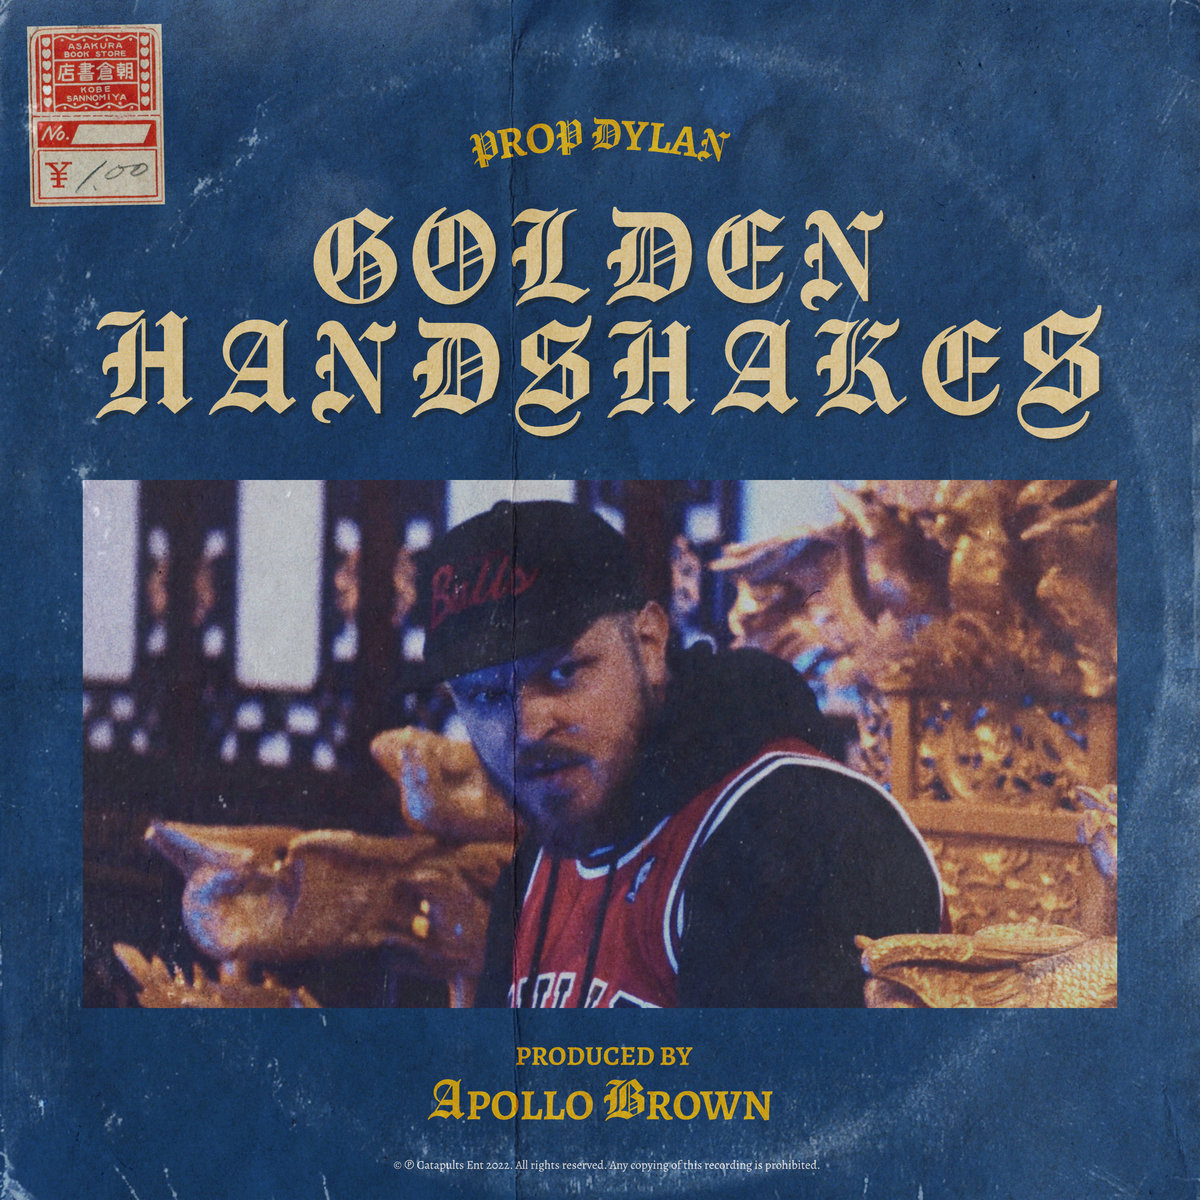 Golden_handshakes_prop_dylan